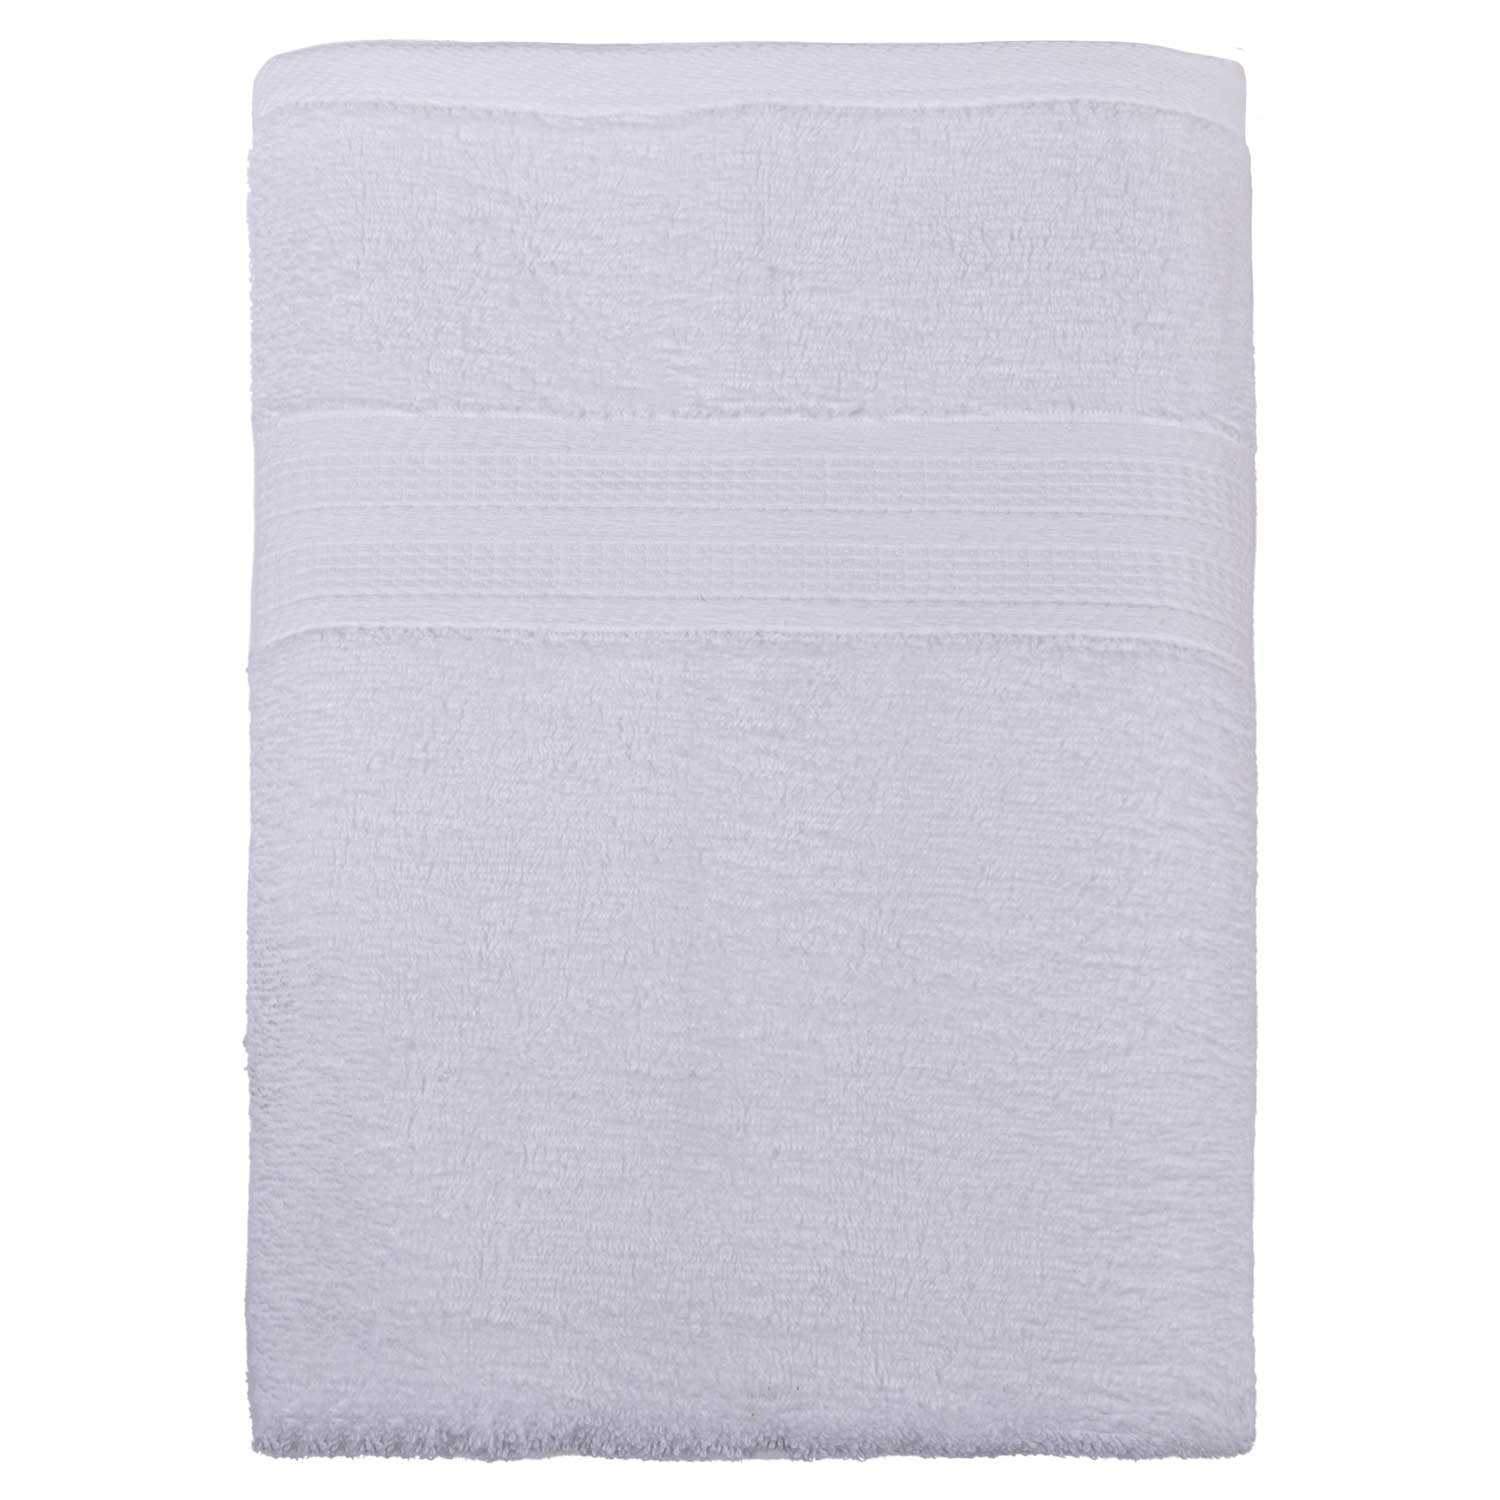 Bath sheet, 30" x 58", white